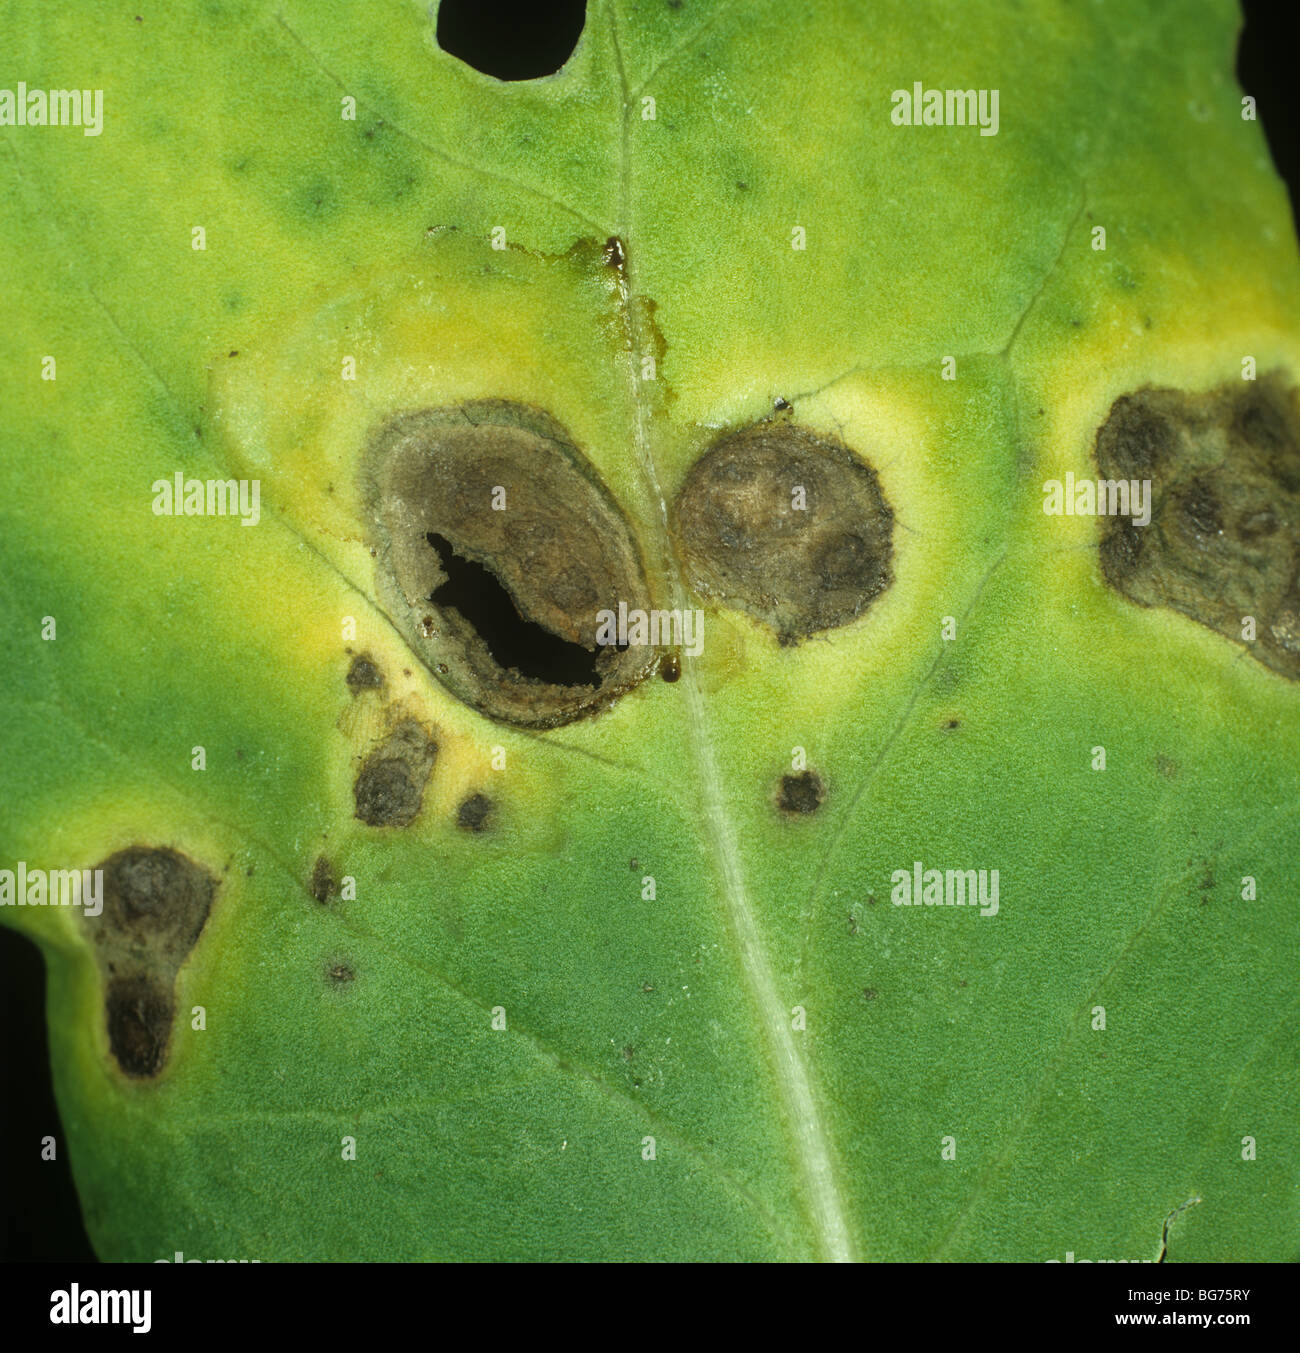 La tache sombre (Alternaria brassicicola) lésions sur une feuille de chou Banque D'Images